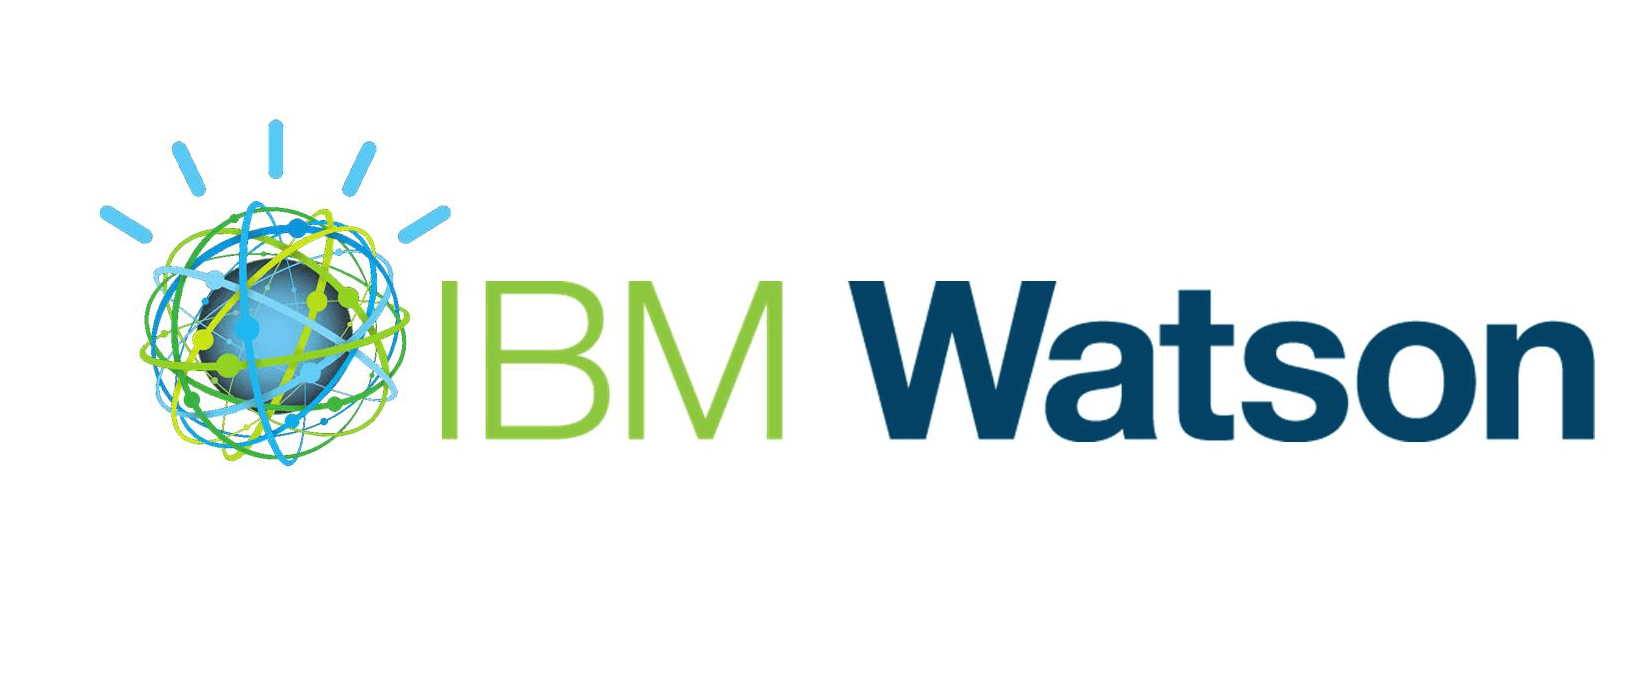 Use IBM Watson Logo - IBM Watson Classroom Solutions